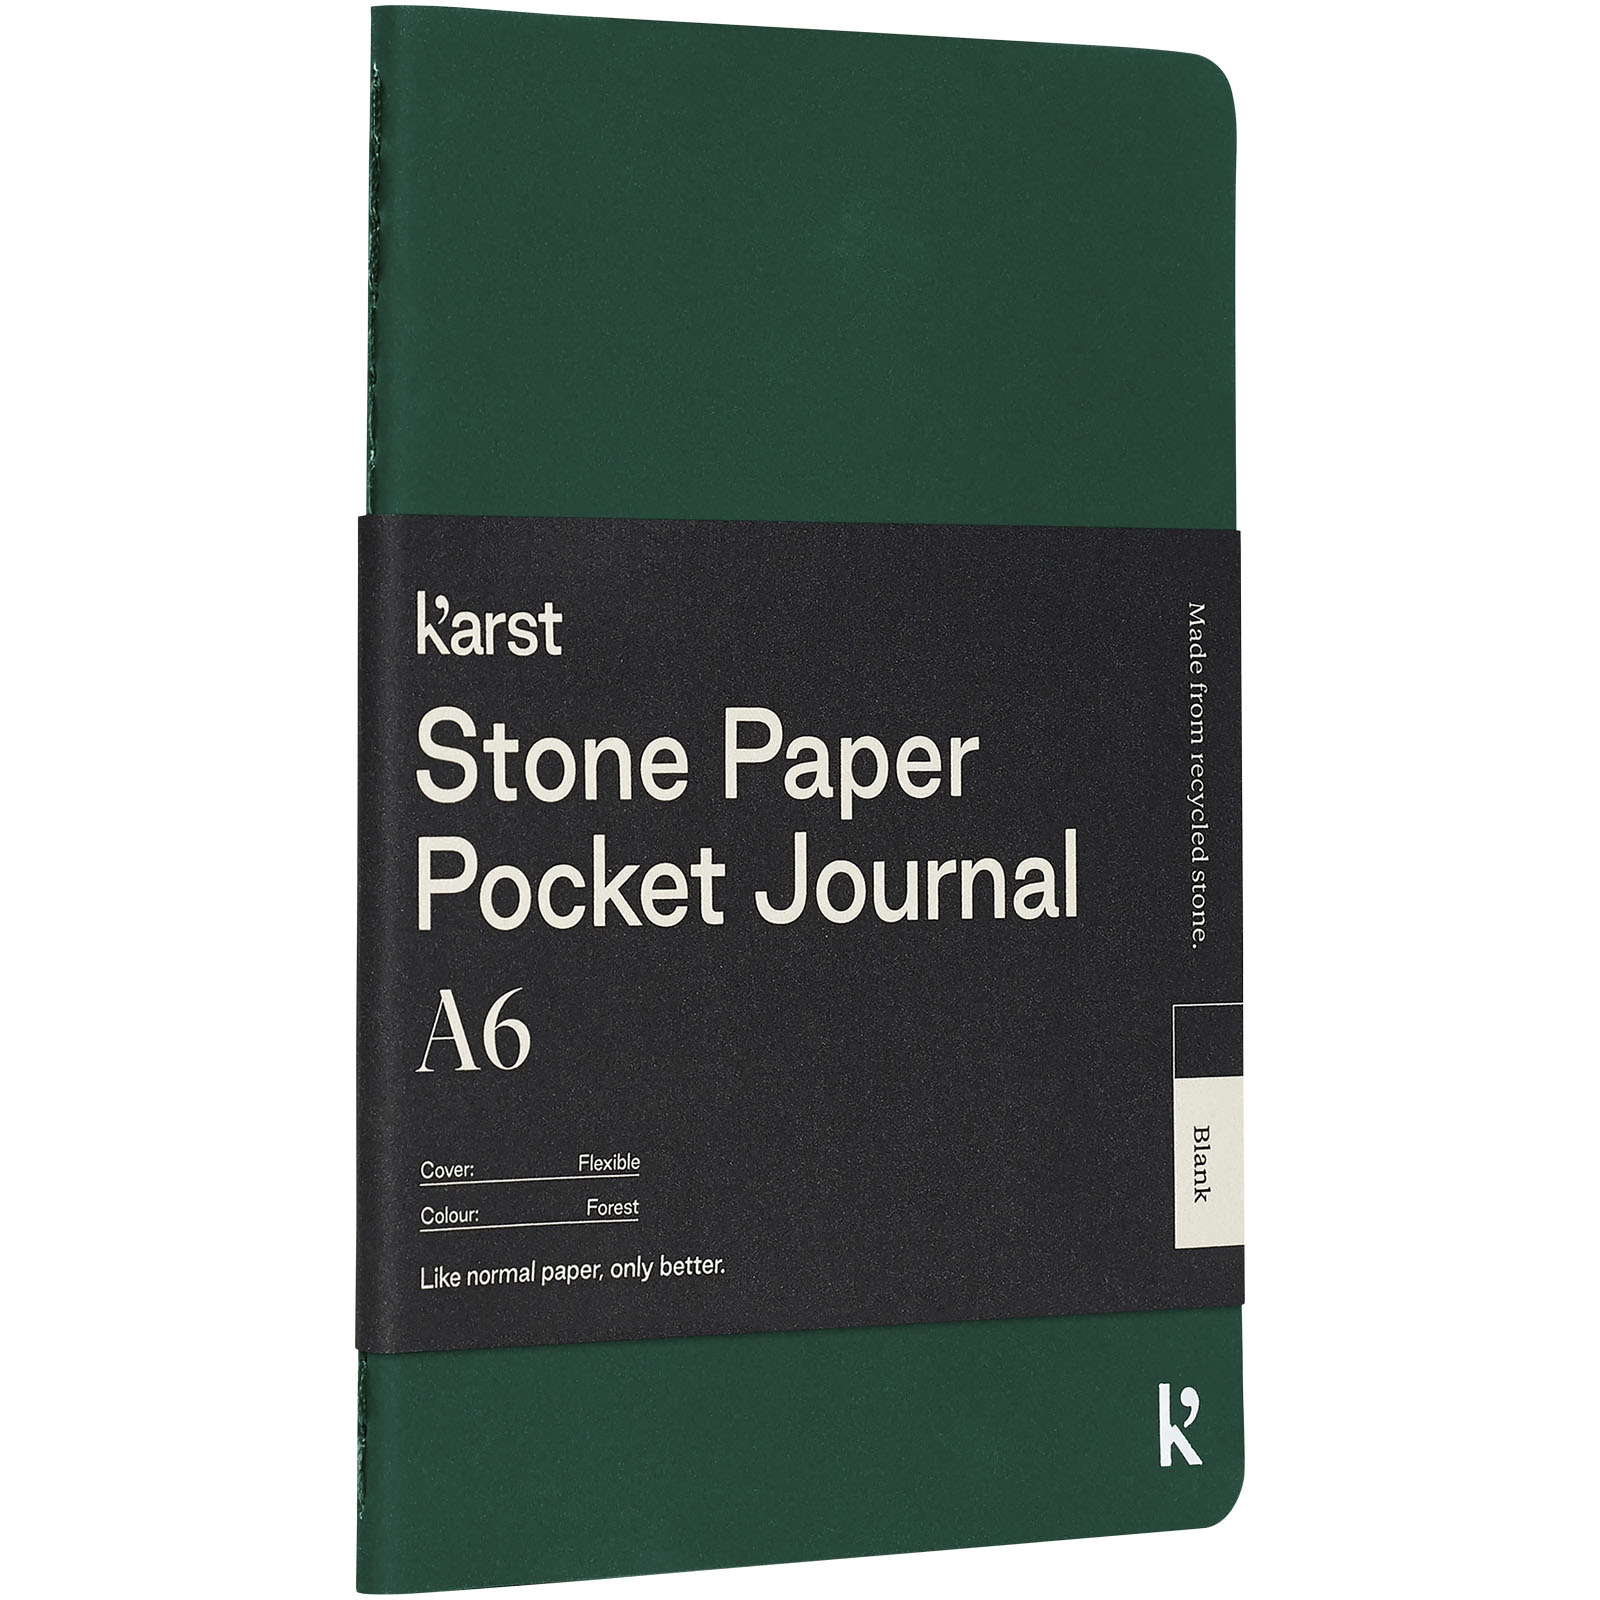 Blocs-notes et essentiels pour le bureau - Journal de poche Karst® A6 en papier de pierre et à couverture souple - Vierge